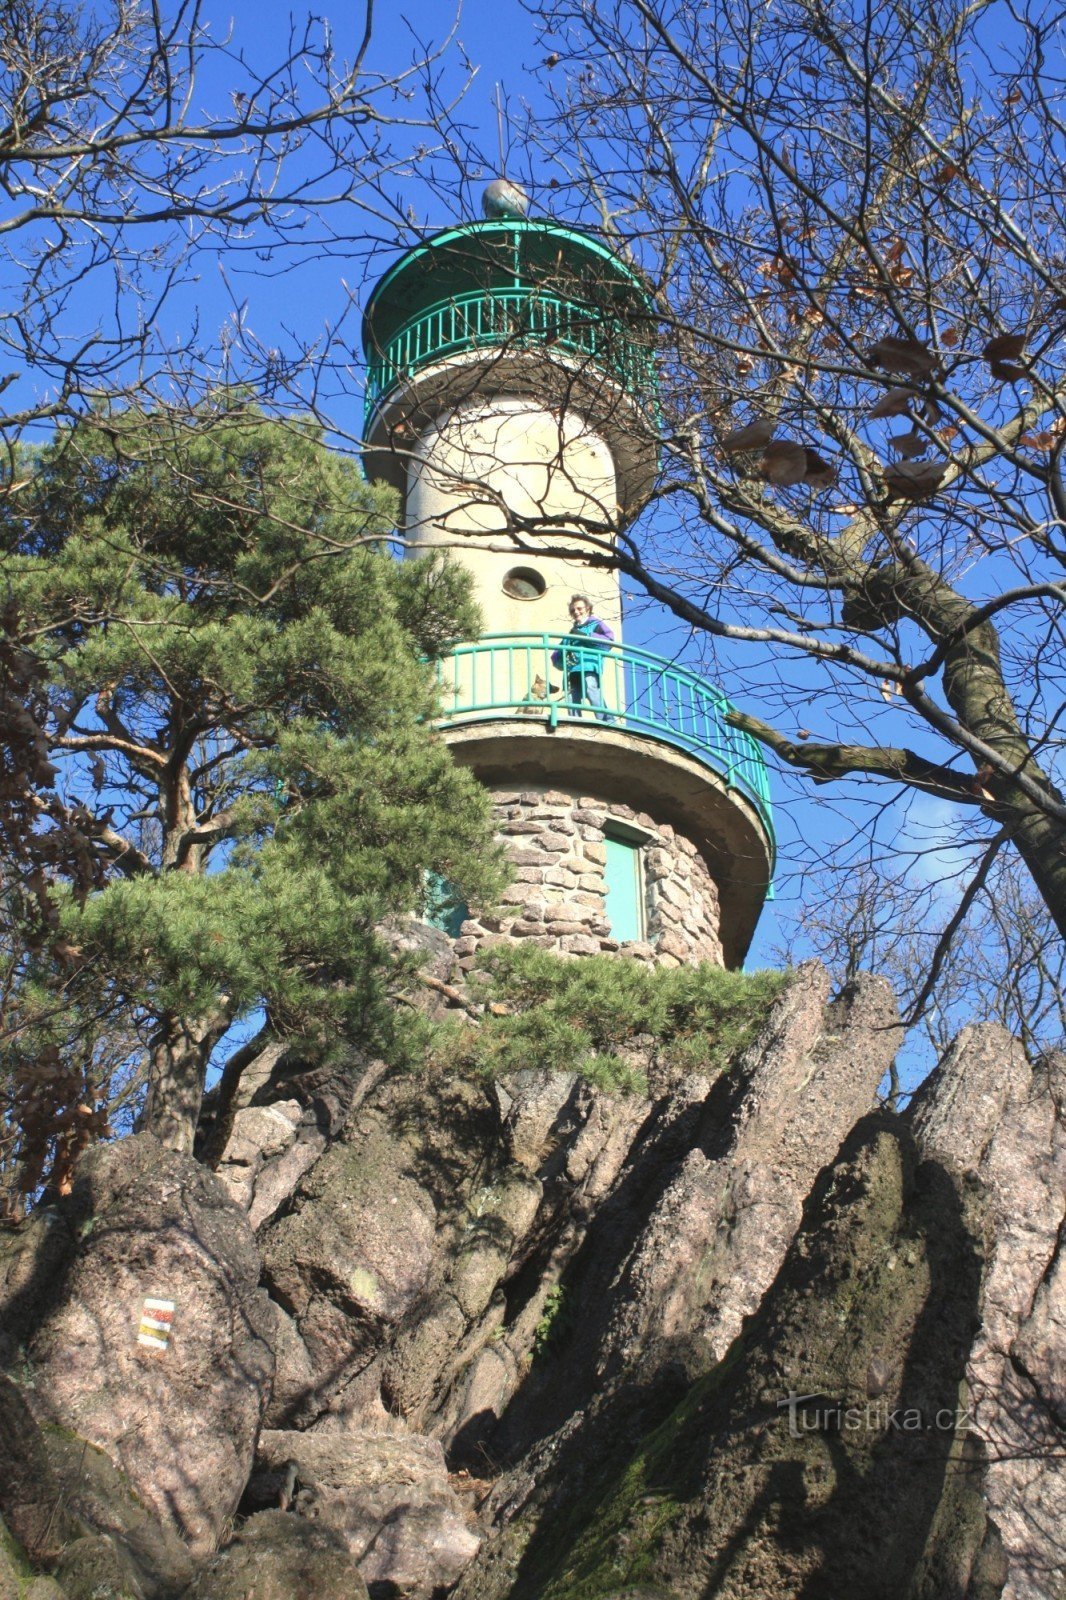 Näkötorni sijaitsee kallioharjanteella